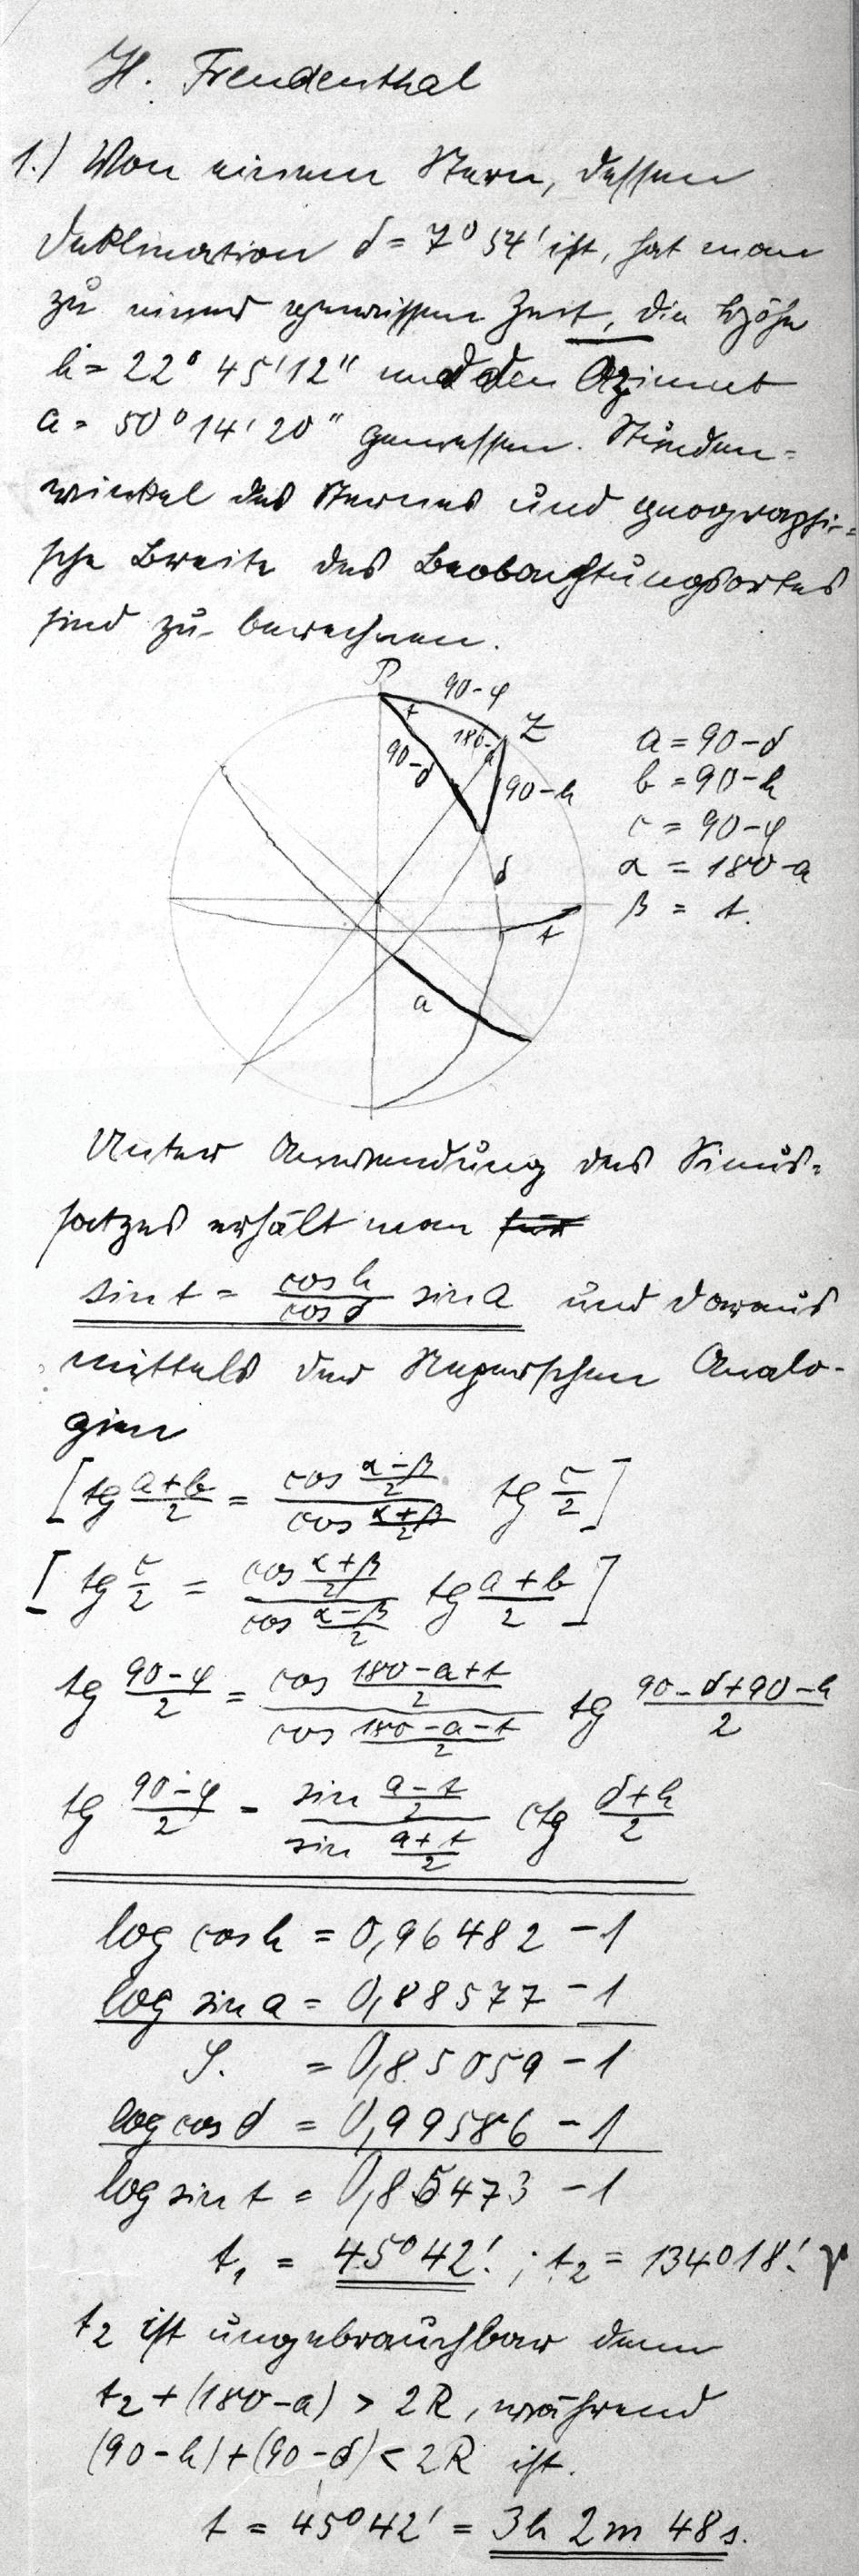 H. Freudenthal ) Van een ster, waarvan de inclinatie δ = ' is, heeft men op een zeker tijdstip de hoogte h = ' '' en het azimuth a = 0 ' 0'' gemeten.